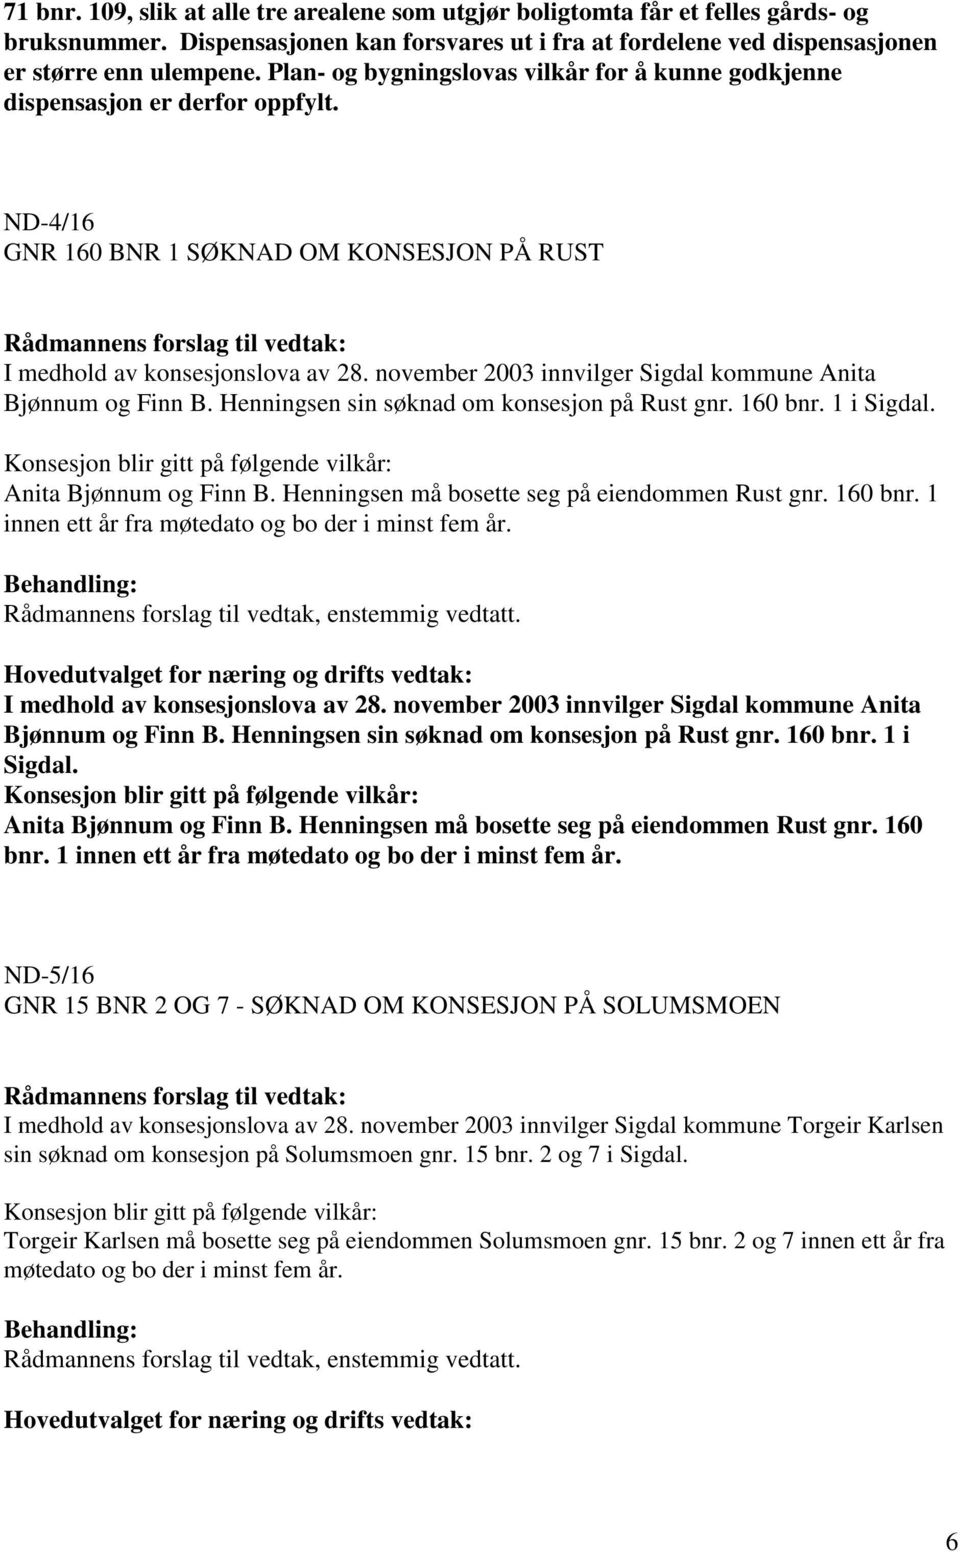 november 2003 innvilger Sigdal kommune Anita Bjønnum og Finn B. Henningsen sin søknad om konsesjon på Rust gnr. 160 bnr. 1 i Sigdal. Anita Bjønnum og Finn B. Henningsen må bosette seg på eiendommen Rust gnr.